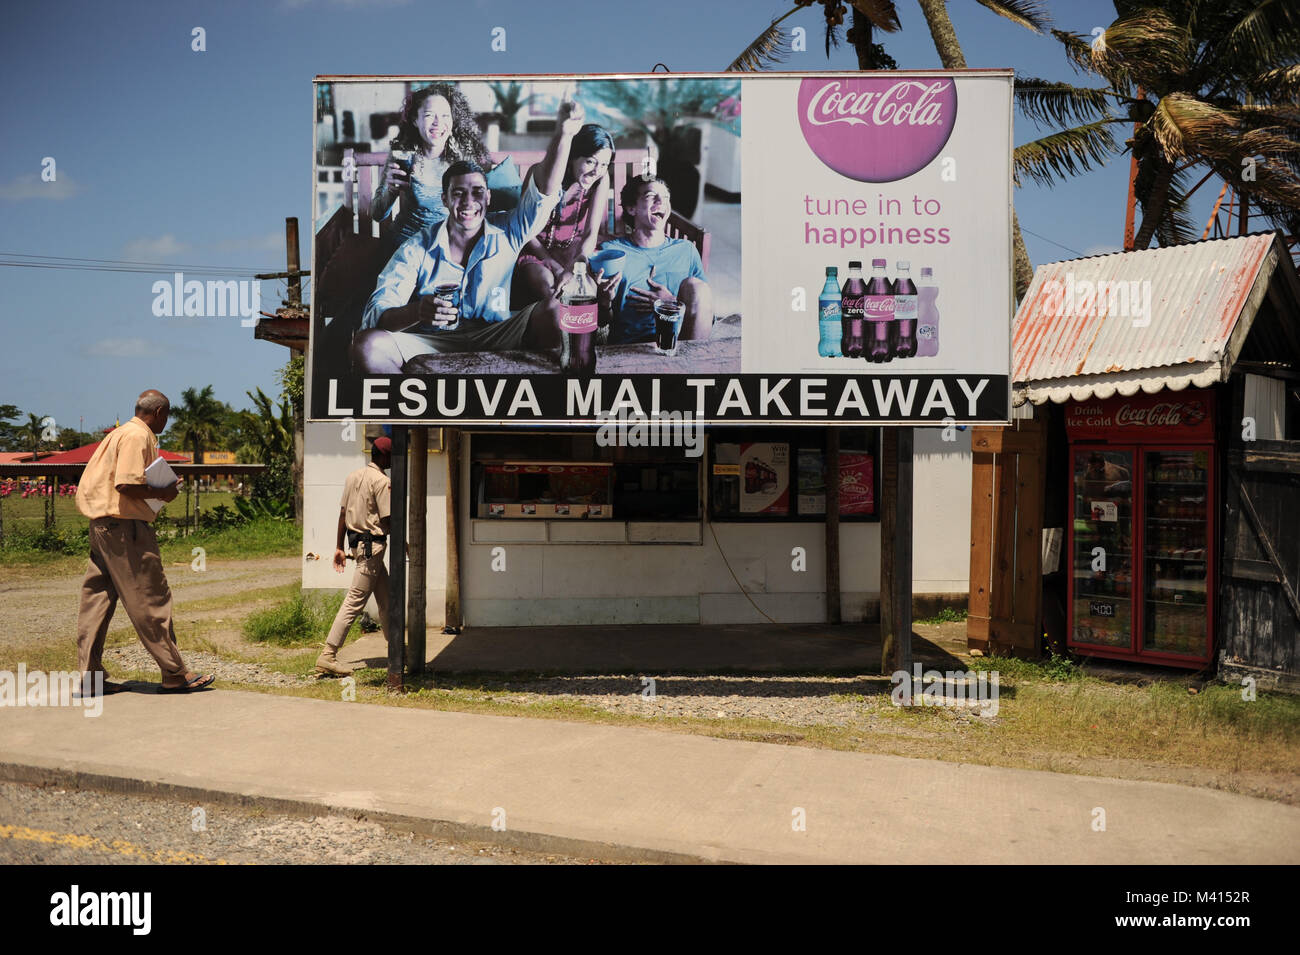 Lesuva Mai Takeaway & Coca-Cola advert in Suva, Fiji Stock Photo